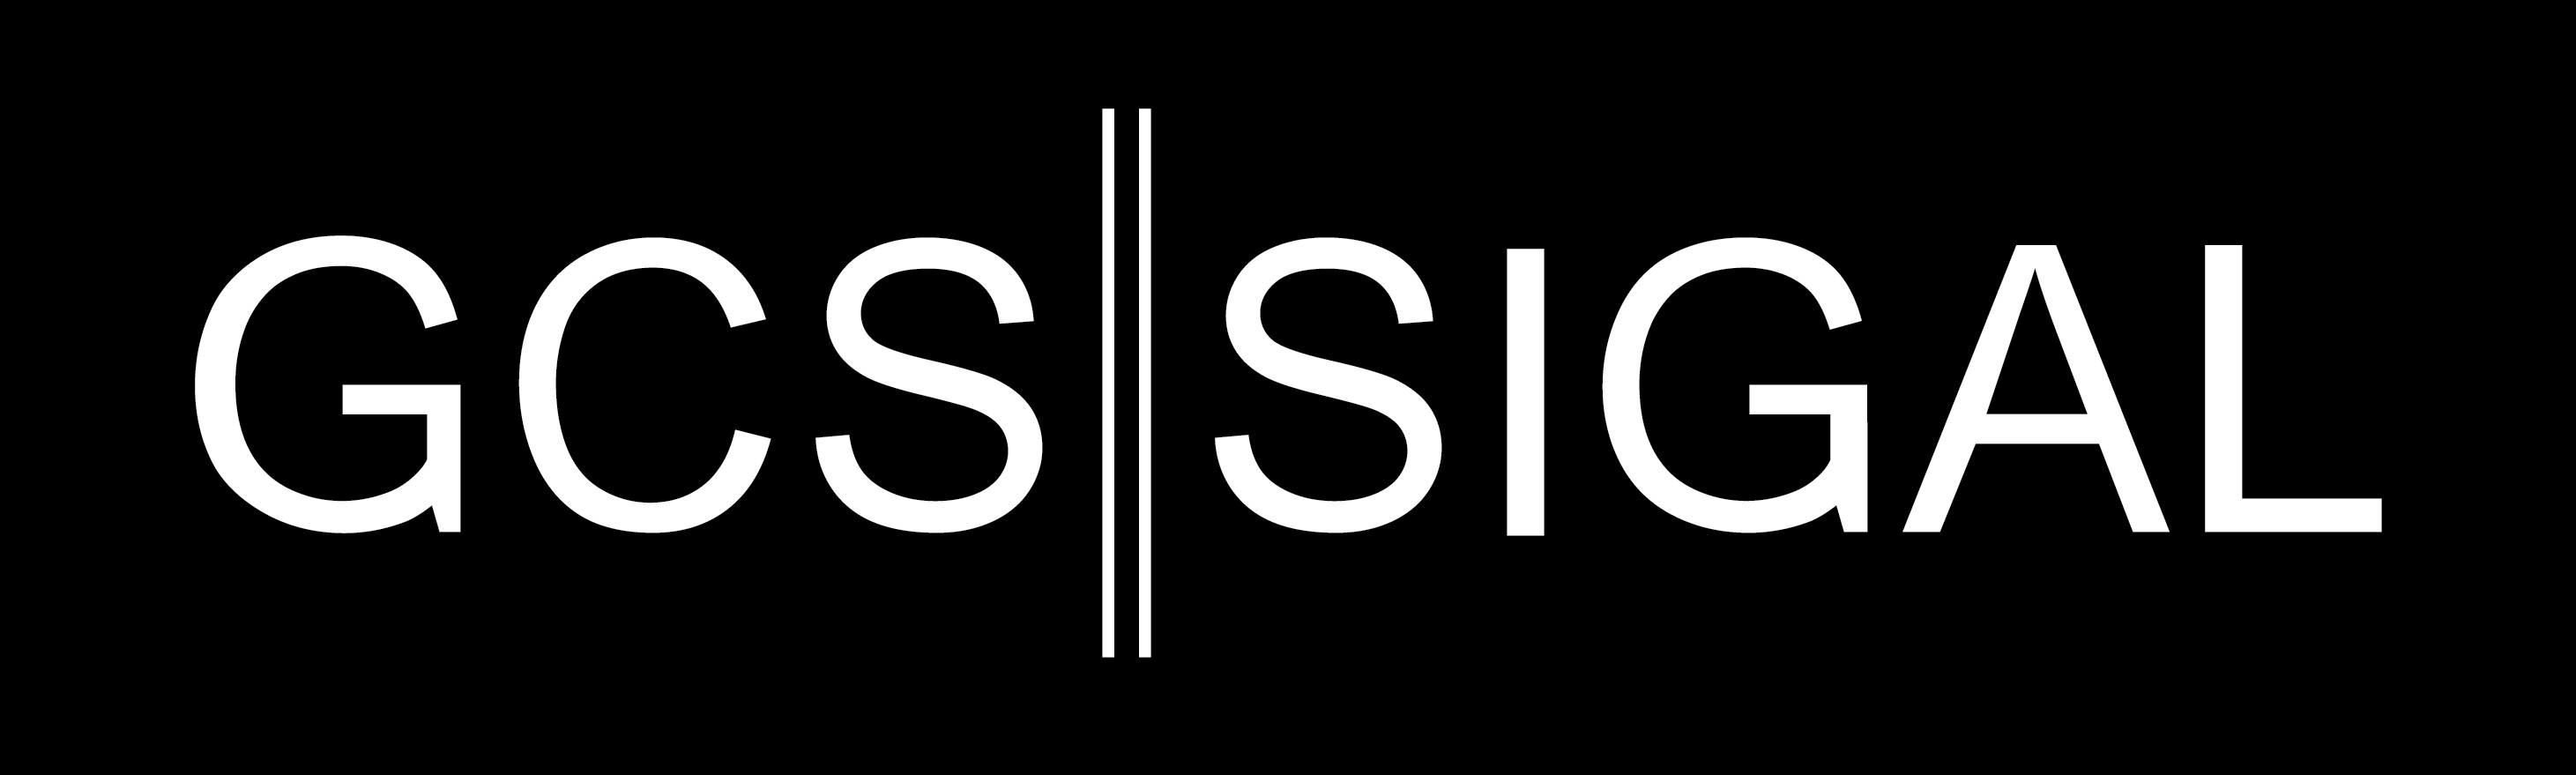 GCS-SIGAL Black Box Logo.jpg